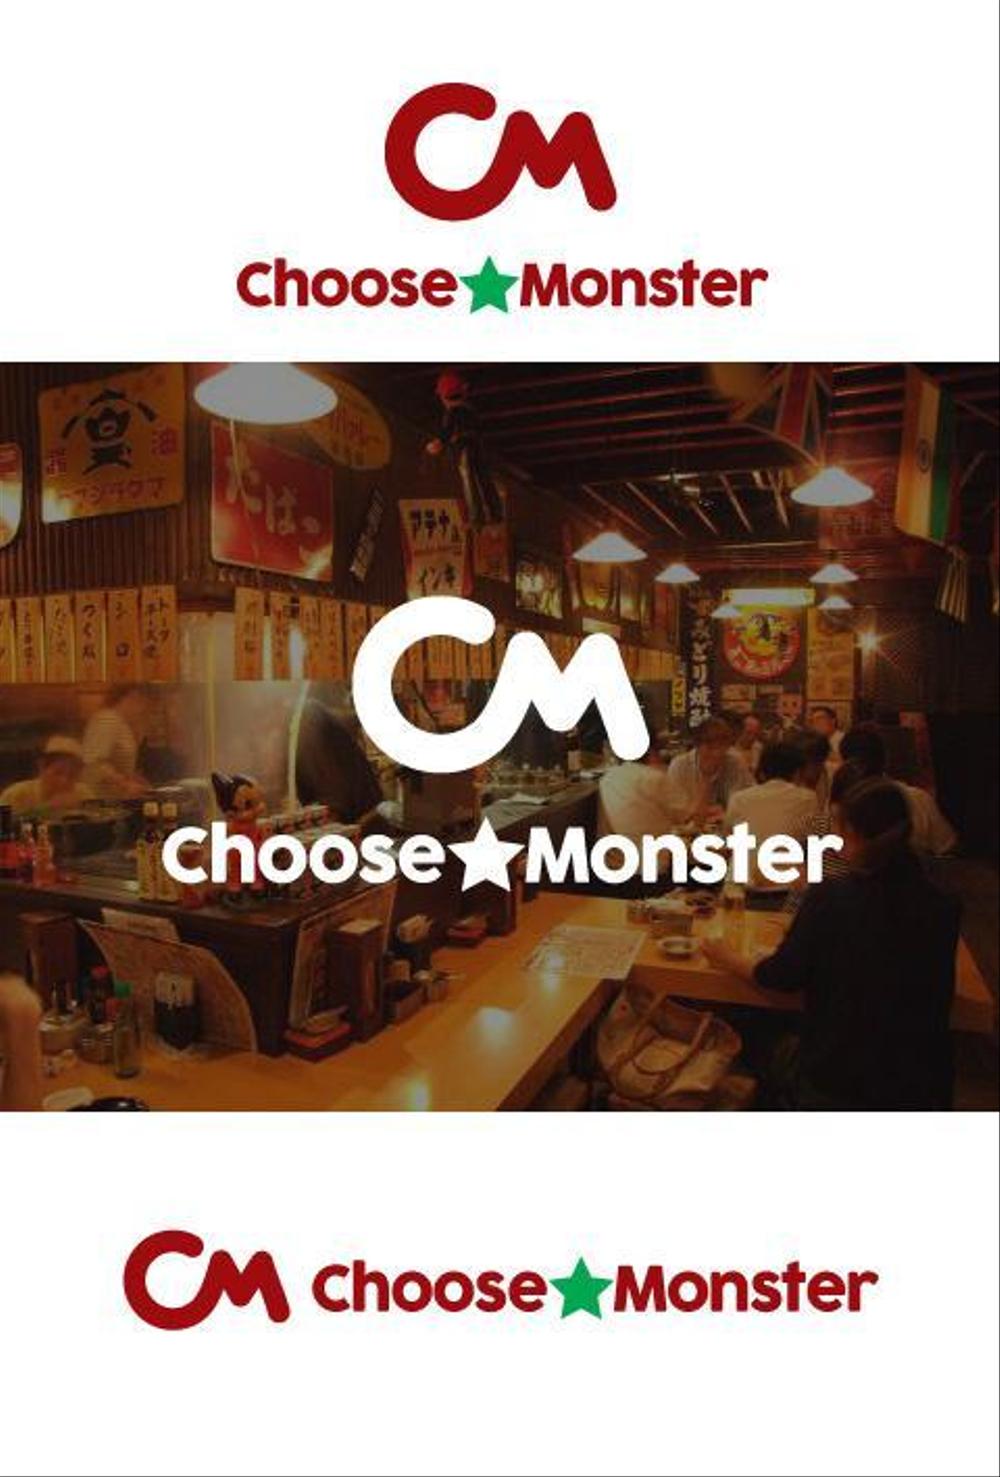 飲食店を改革する、新会社「Choose☆Monster」のロゴの制作